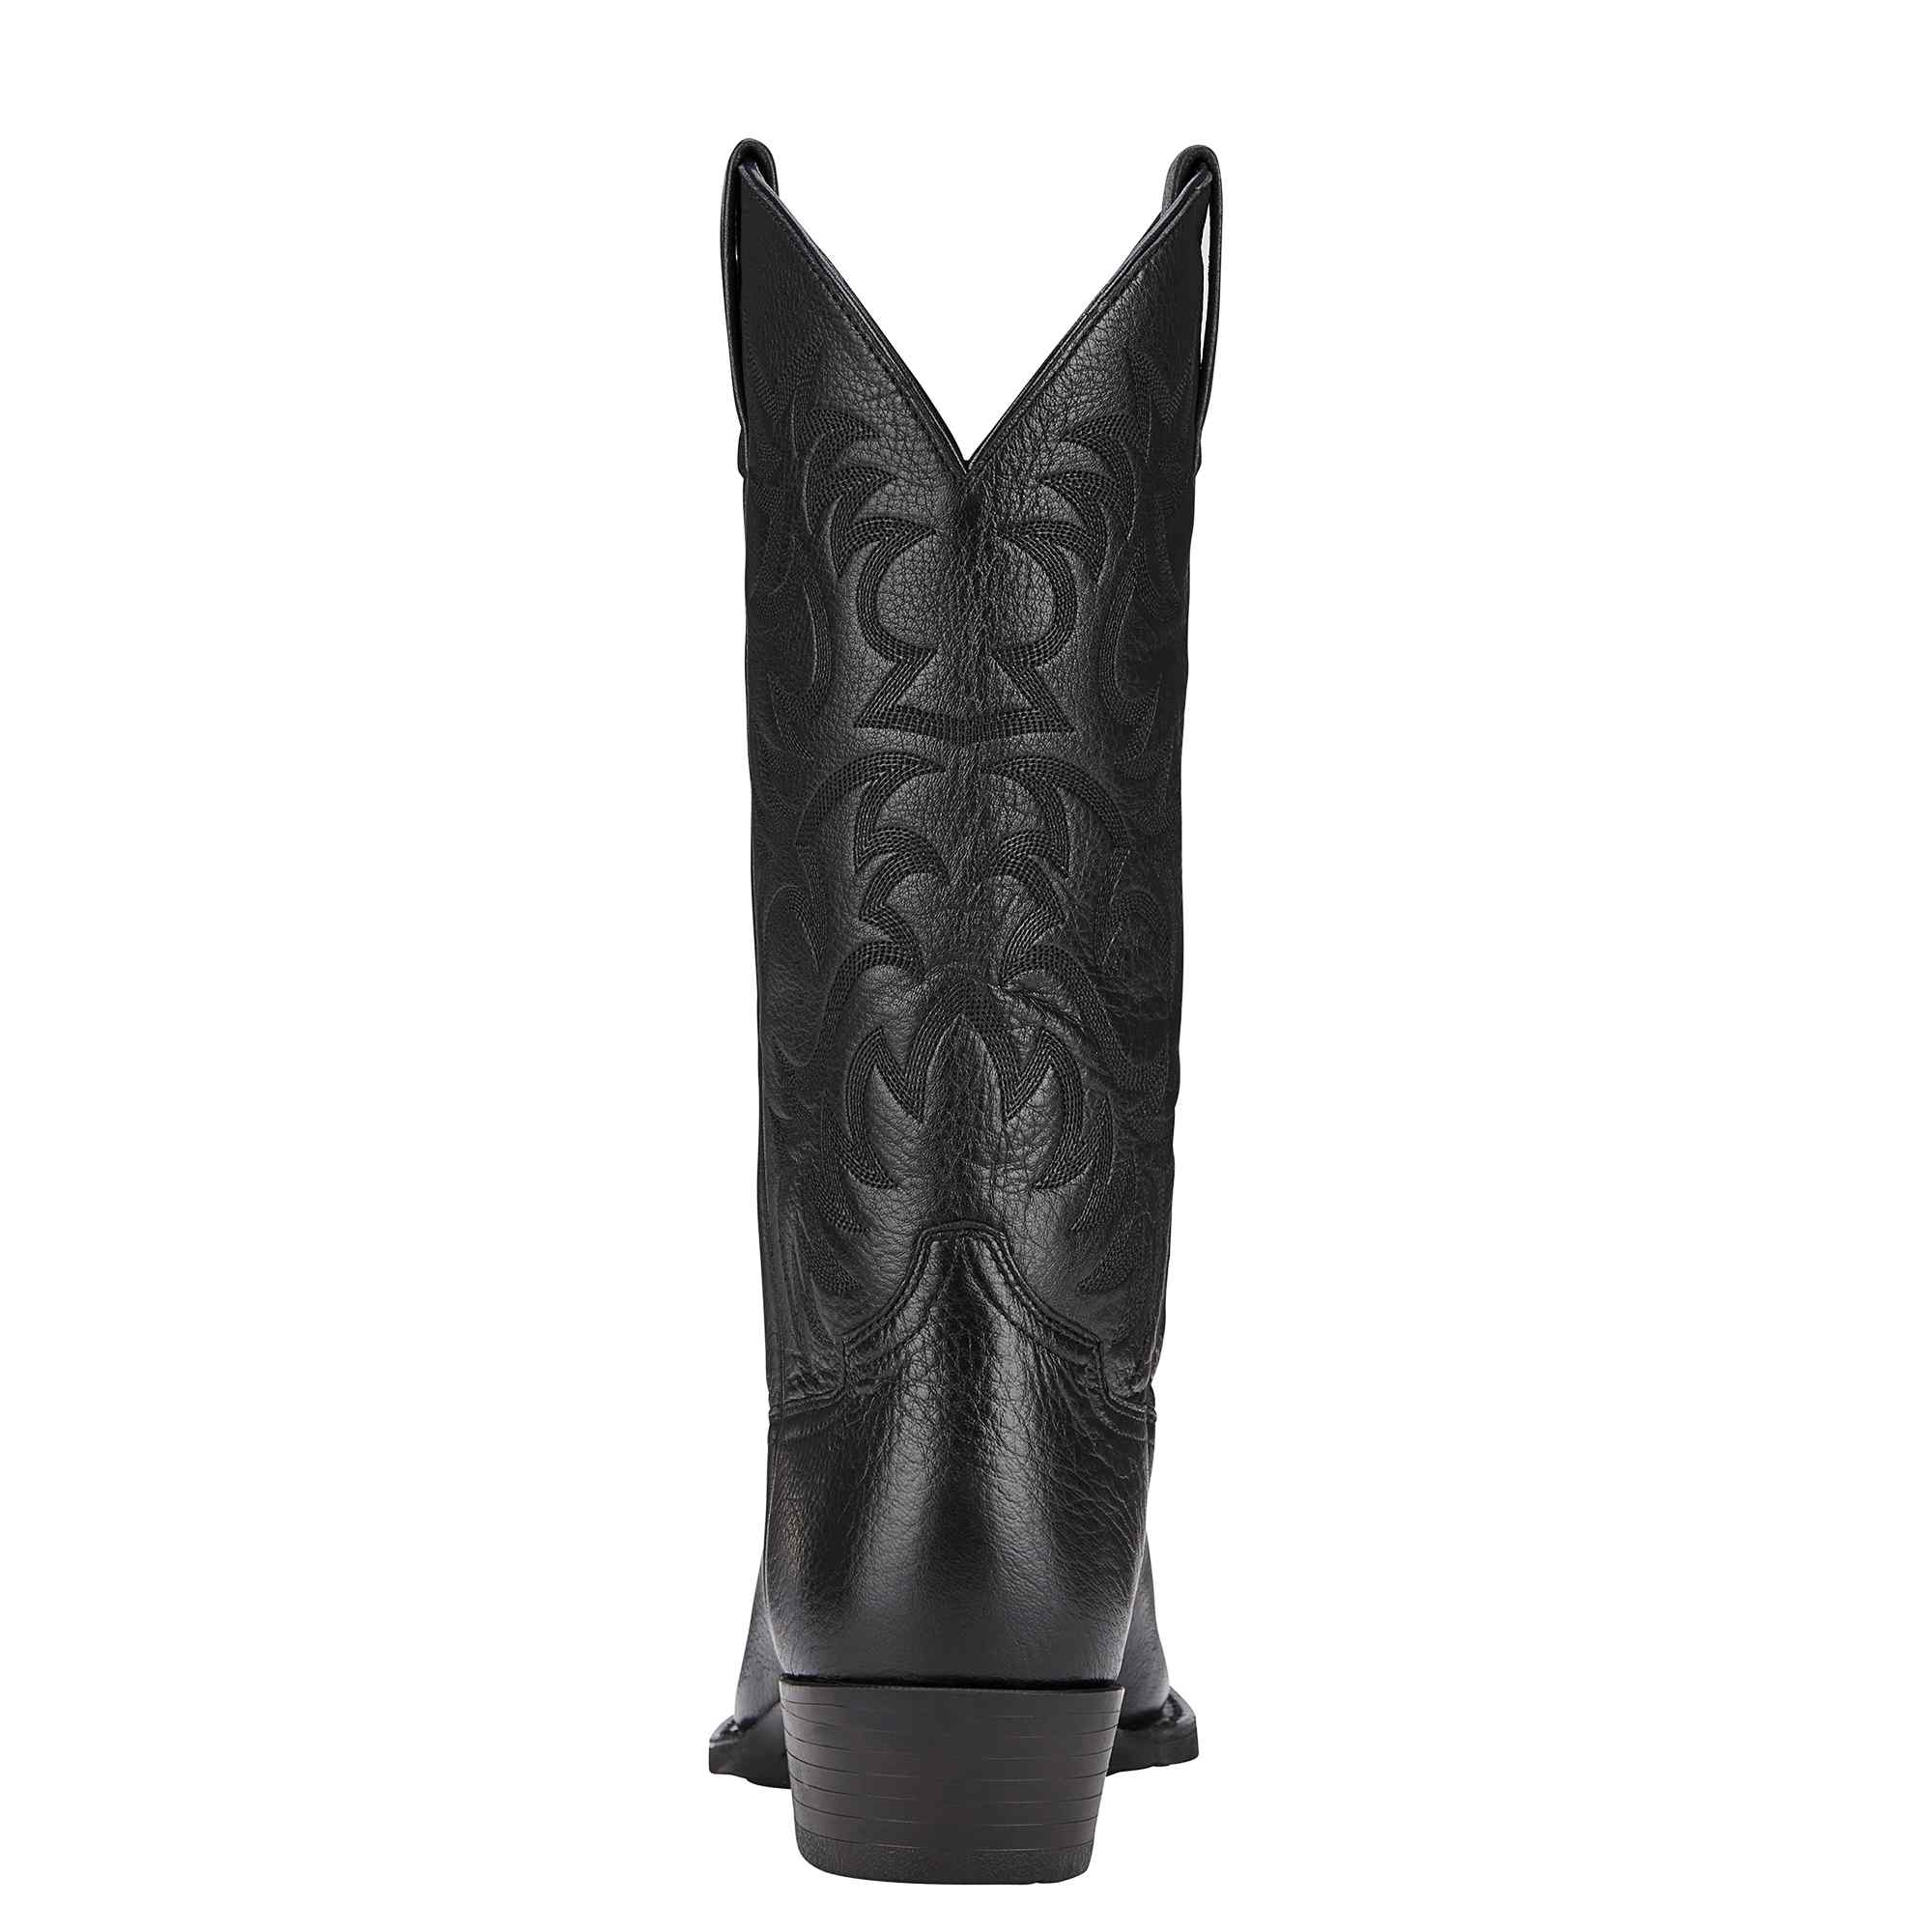 Ariat - Heritage - Black – Allens Boots